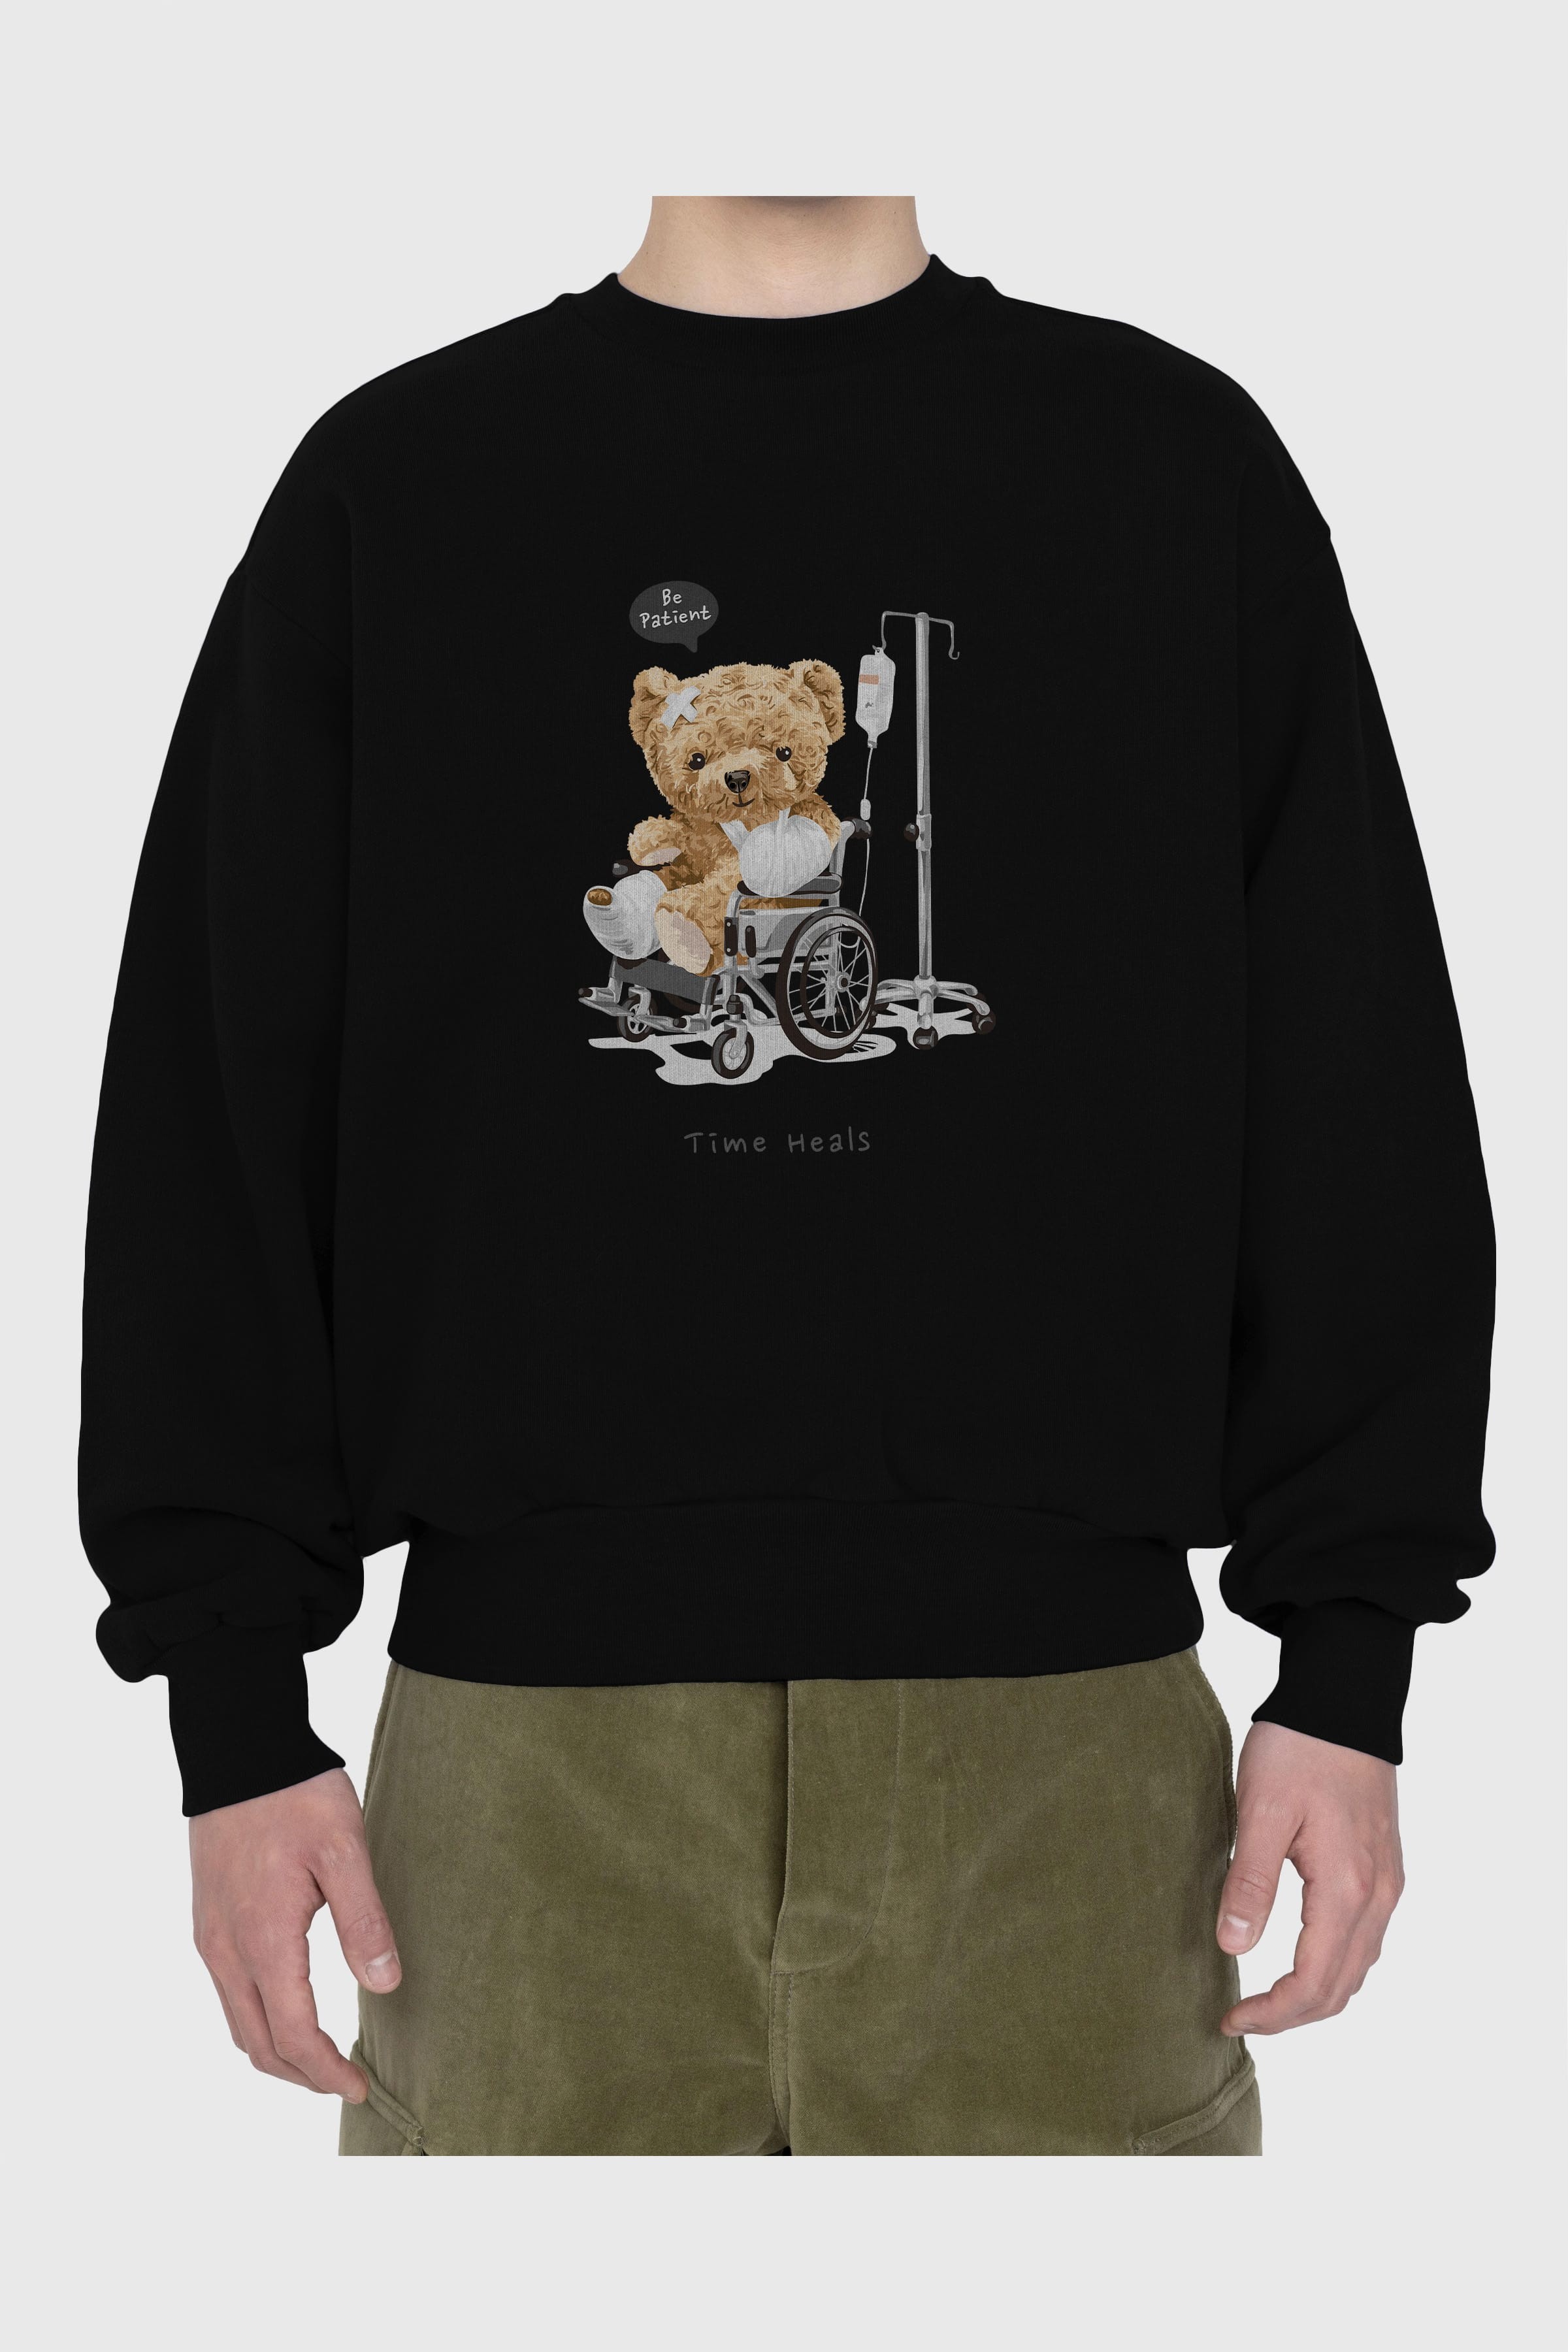 Teddy Bear Time Heals Ön Baskılı Oversize Sweatshirt Erkek Kadın Unisex